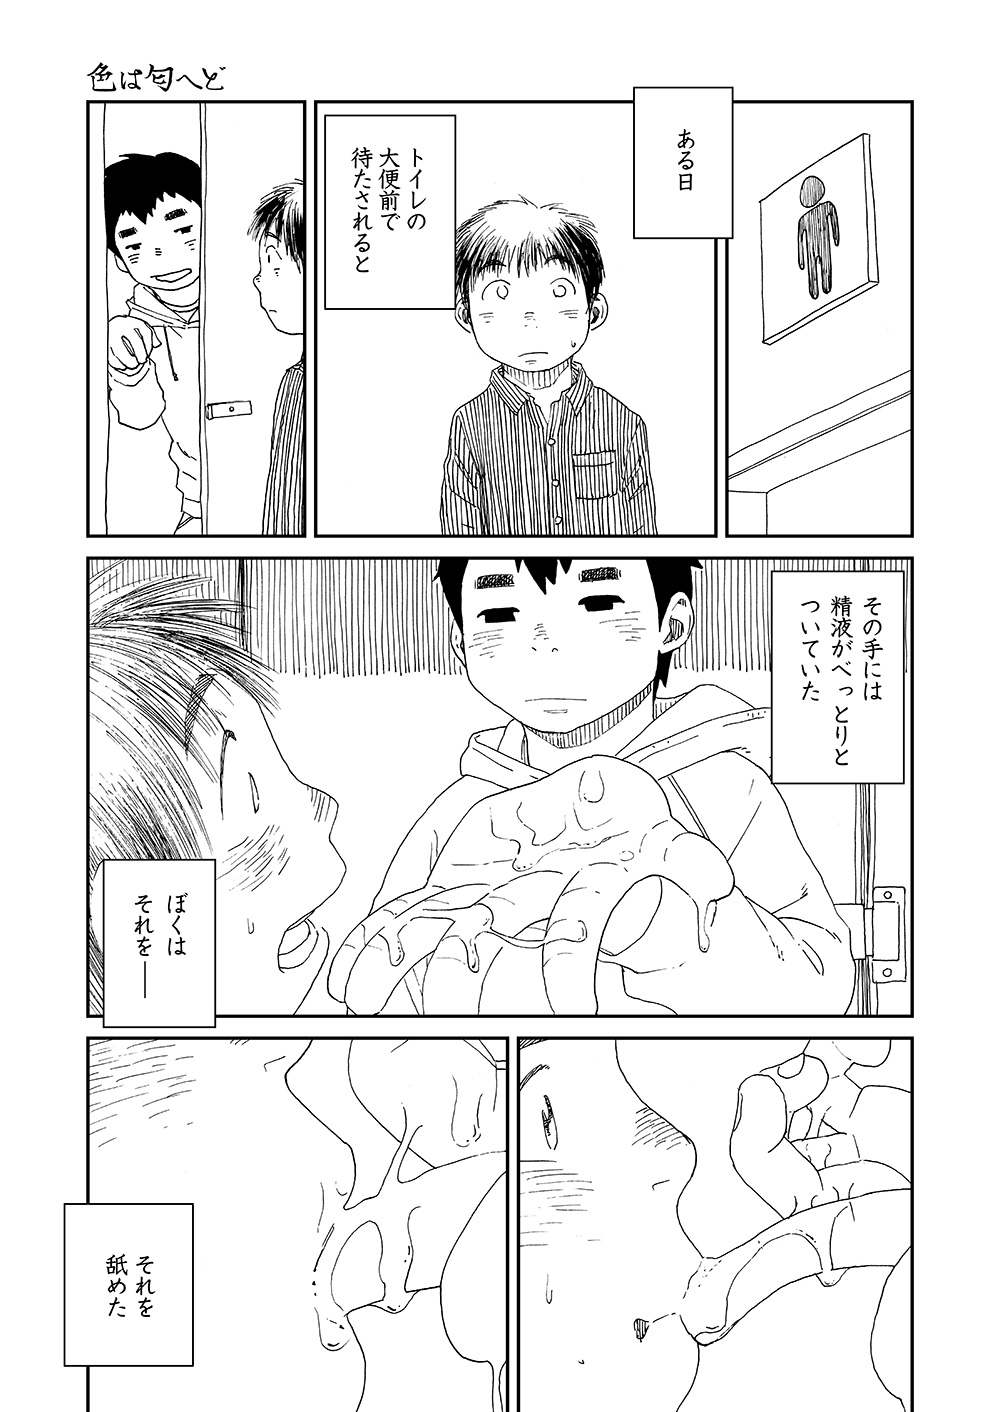 [少年ズーム (しげる)] 漫画少年ズーム vol.13